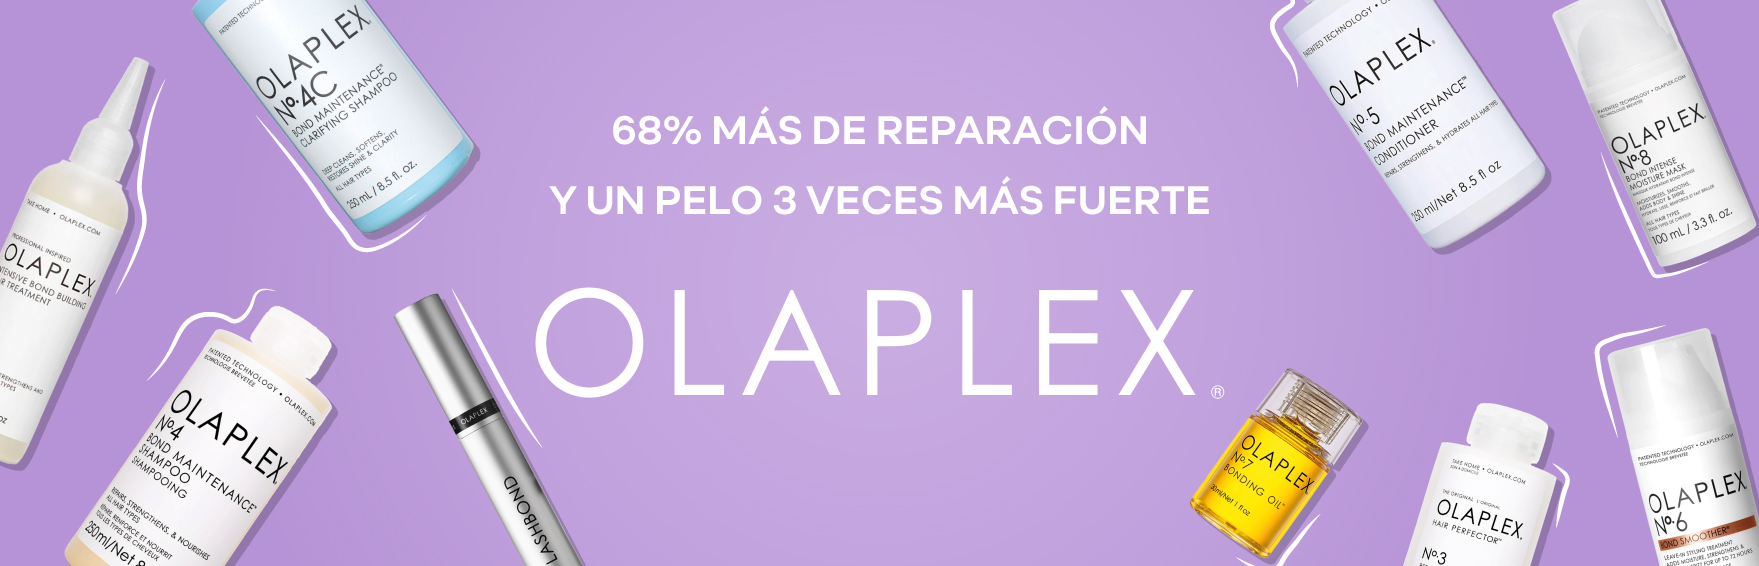 Olaplex Reparacion